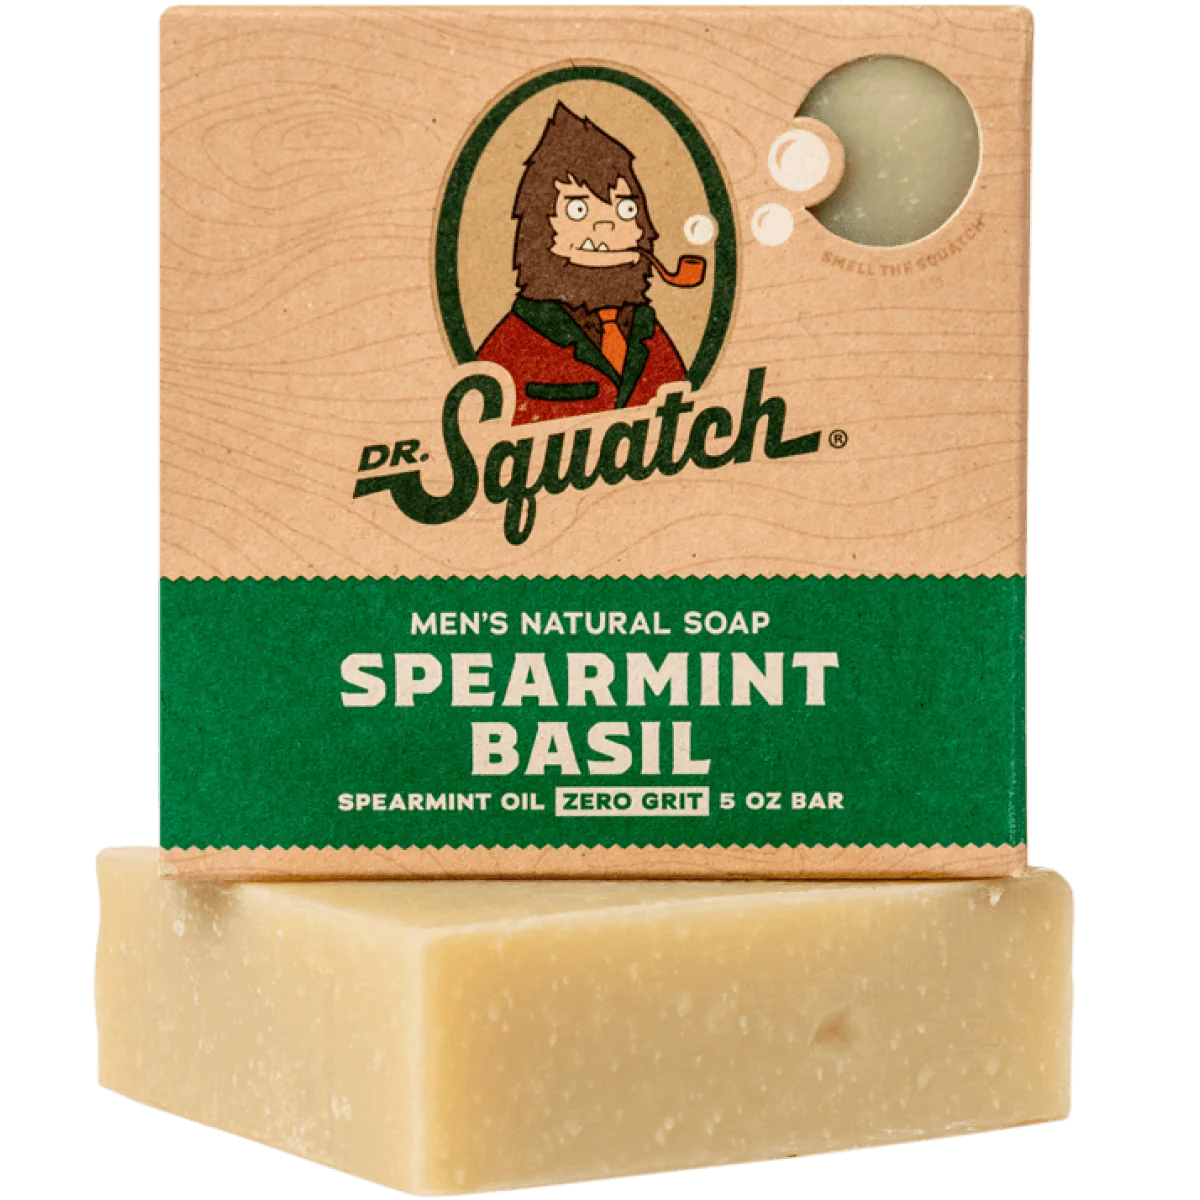 Men's Natural Soap - Spearmint Brasil